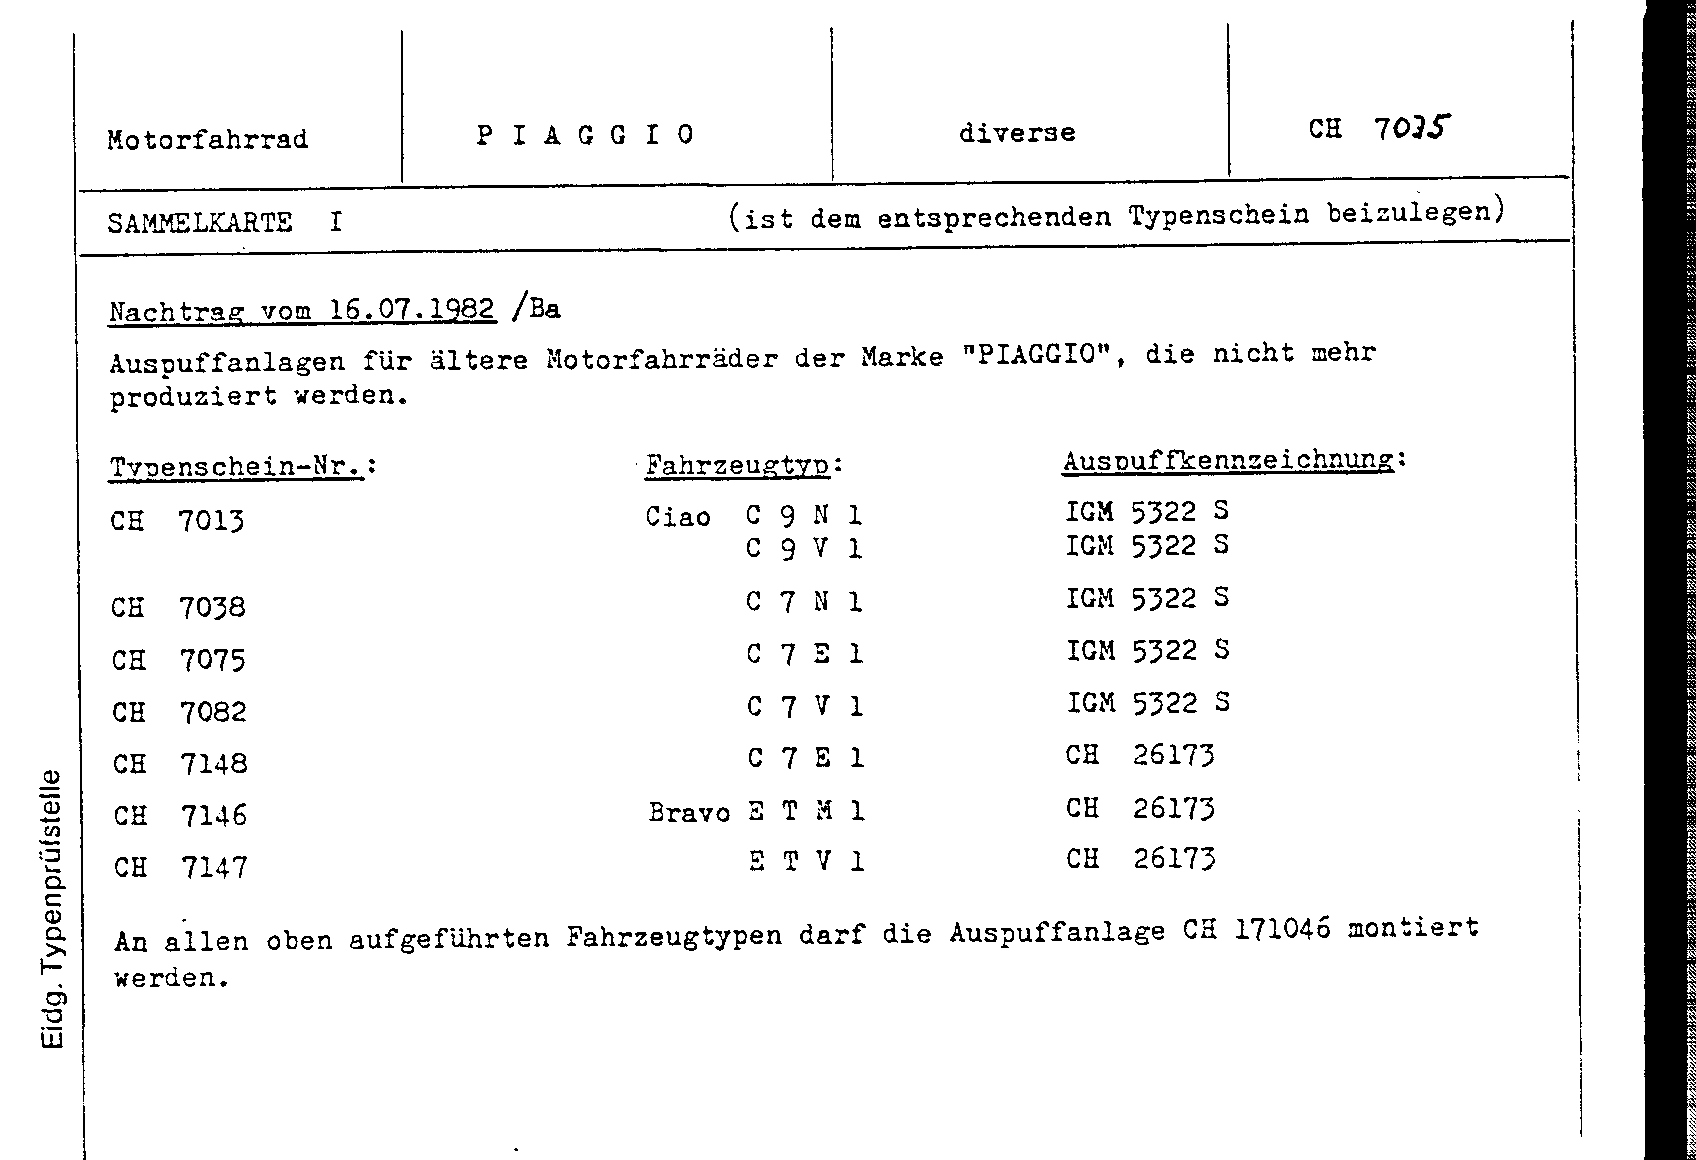 Swiss Certificate of Conformity 7075 German Page 3 (DE.7035_SK.1.png)